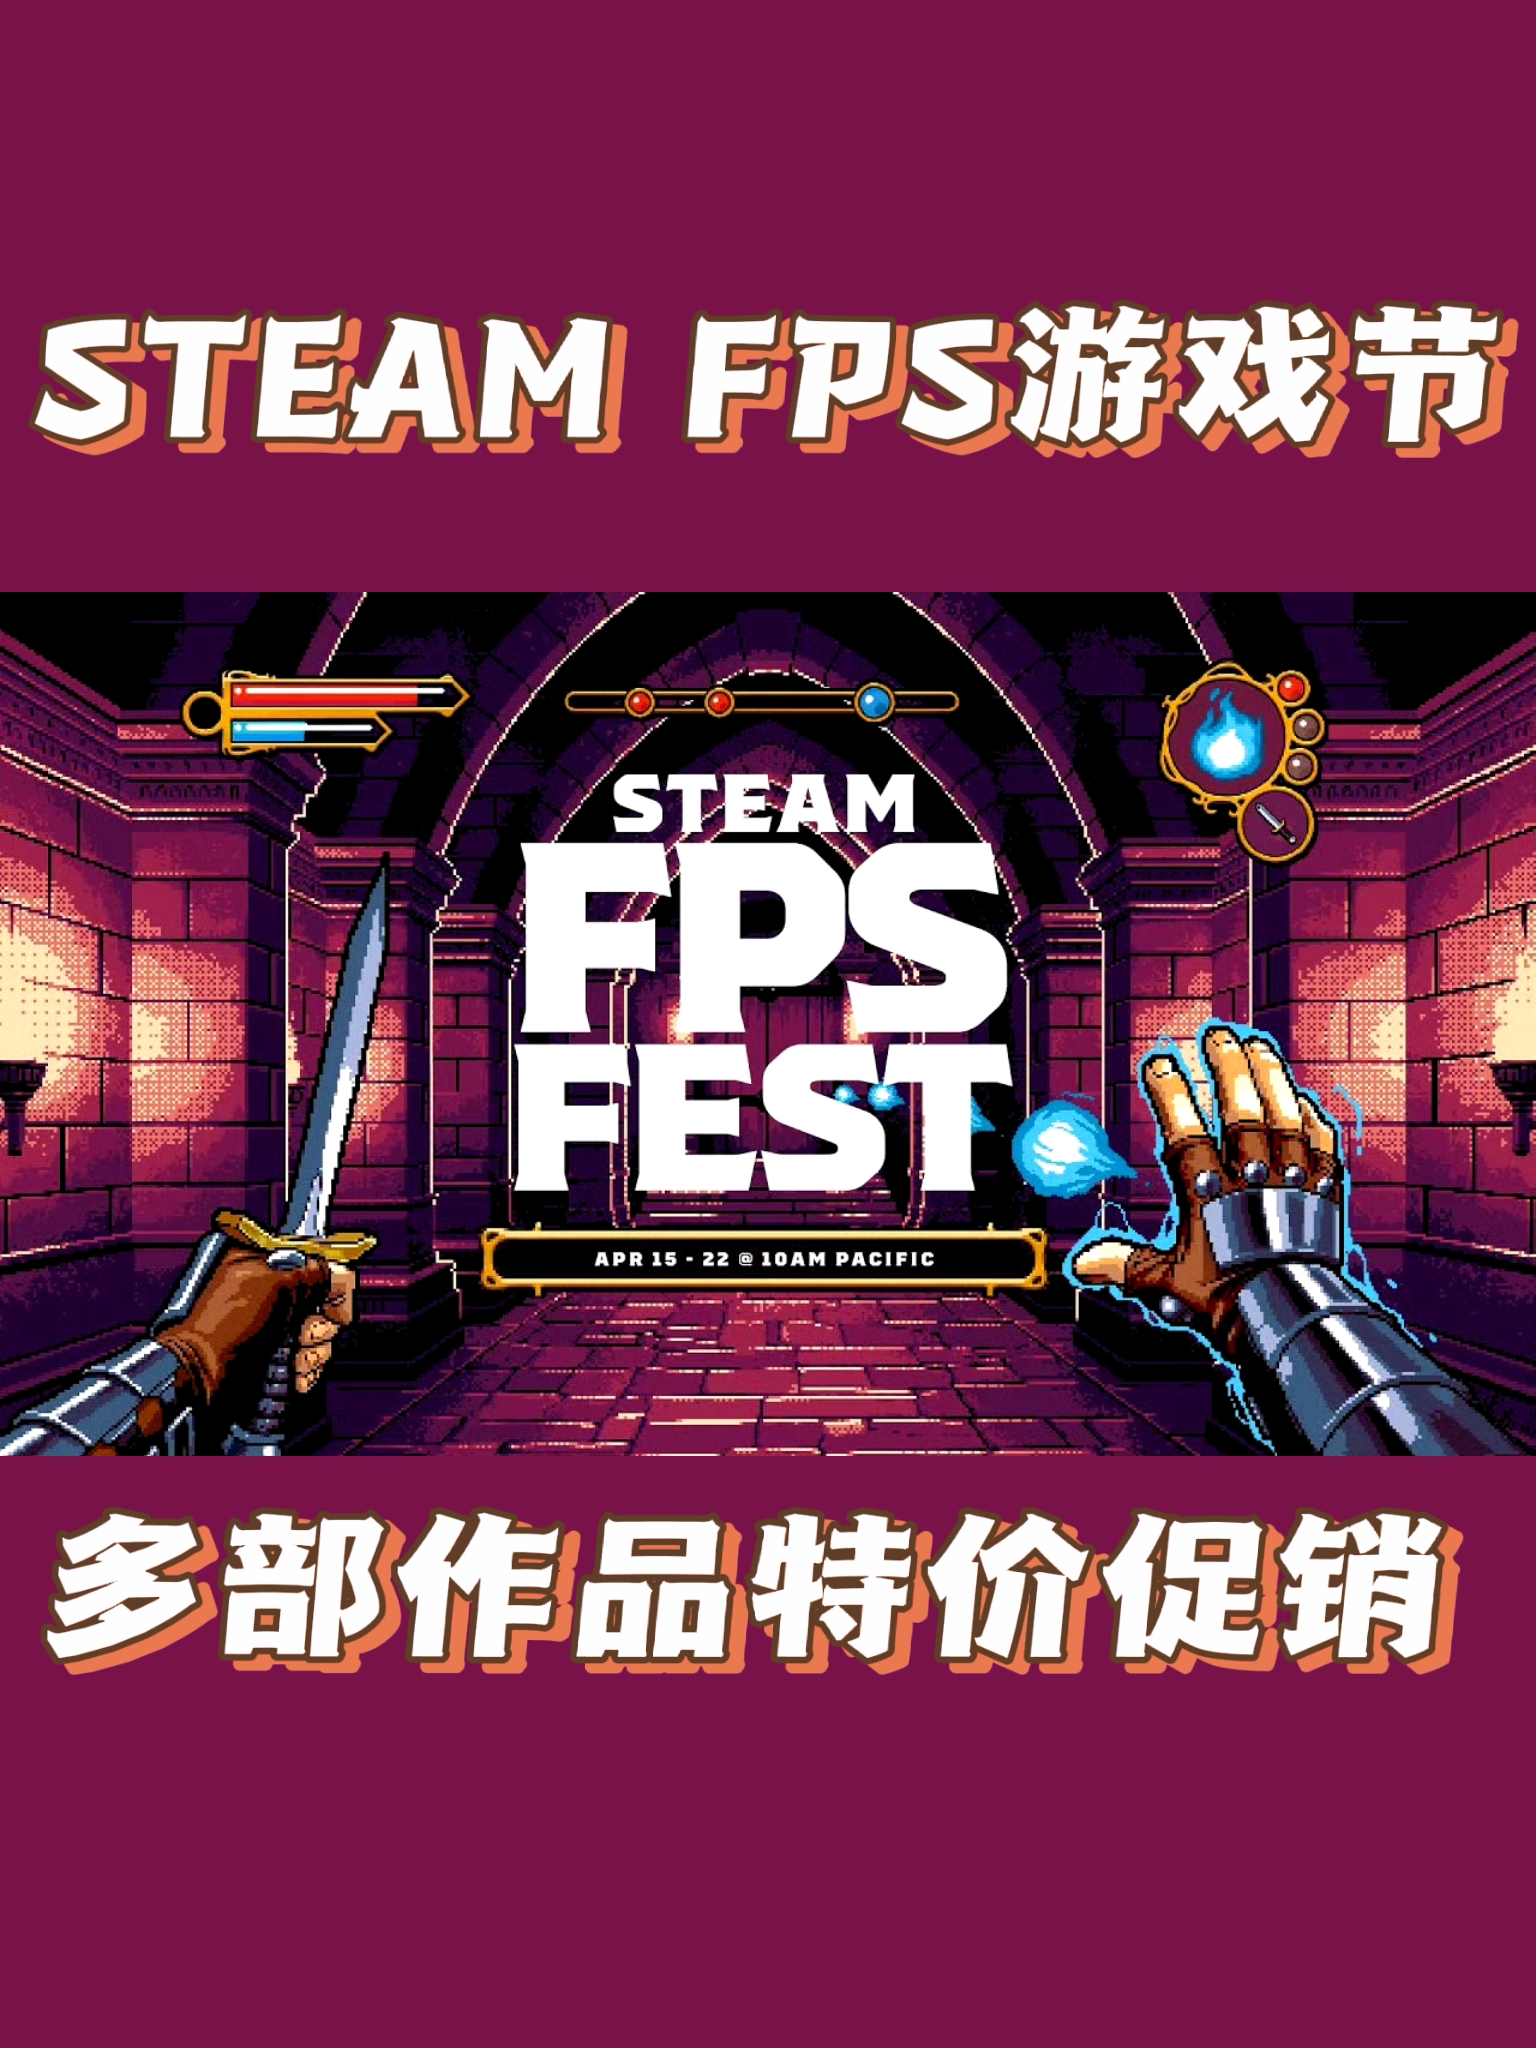 STEAM FPS游戏节明日开启‼️‼️